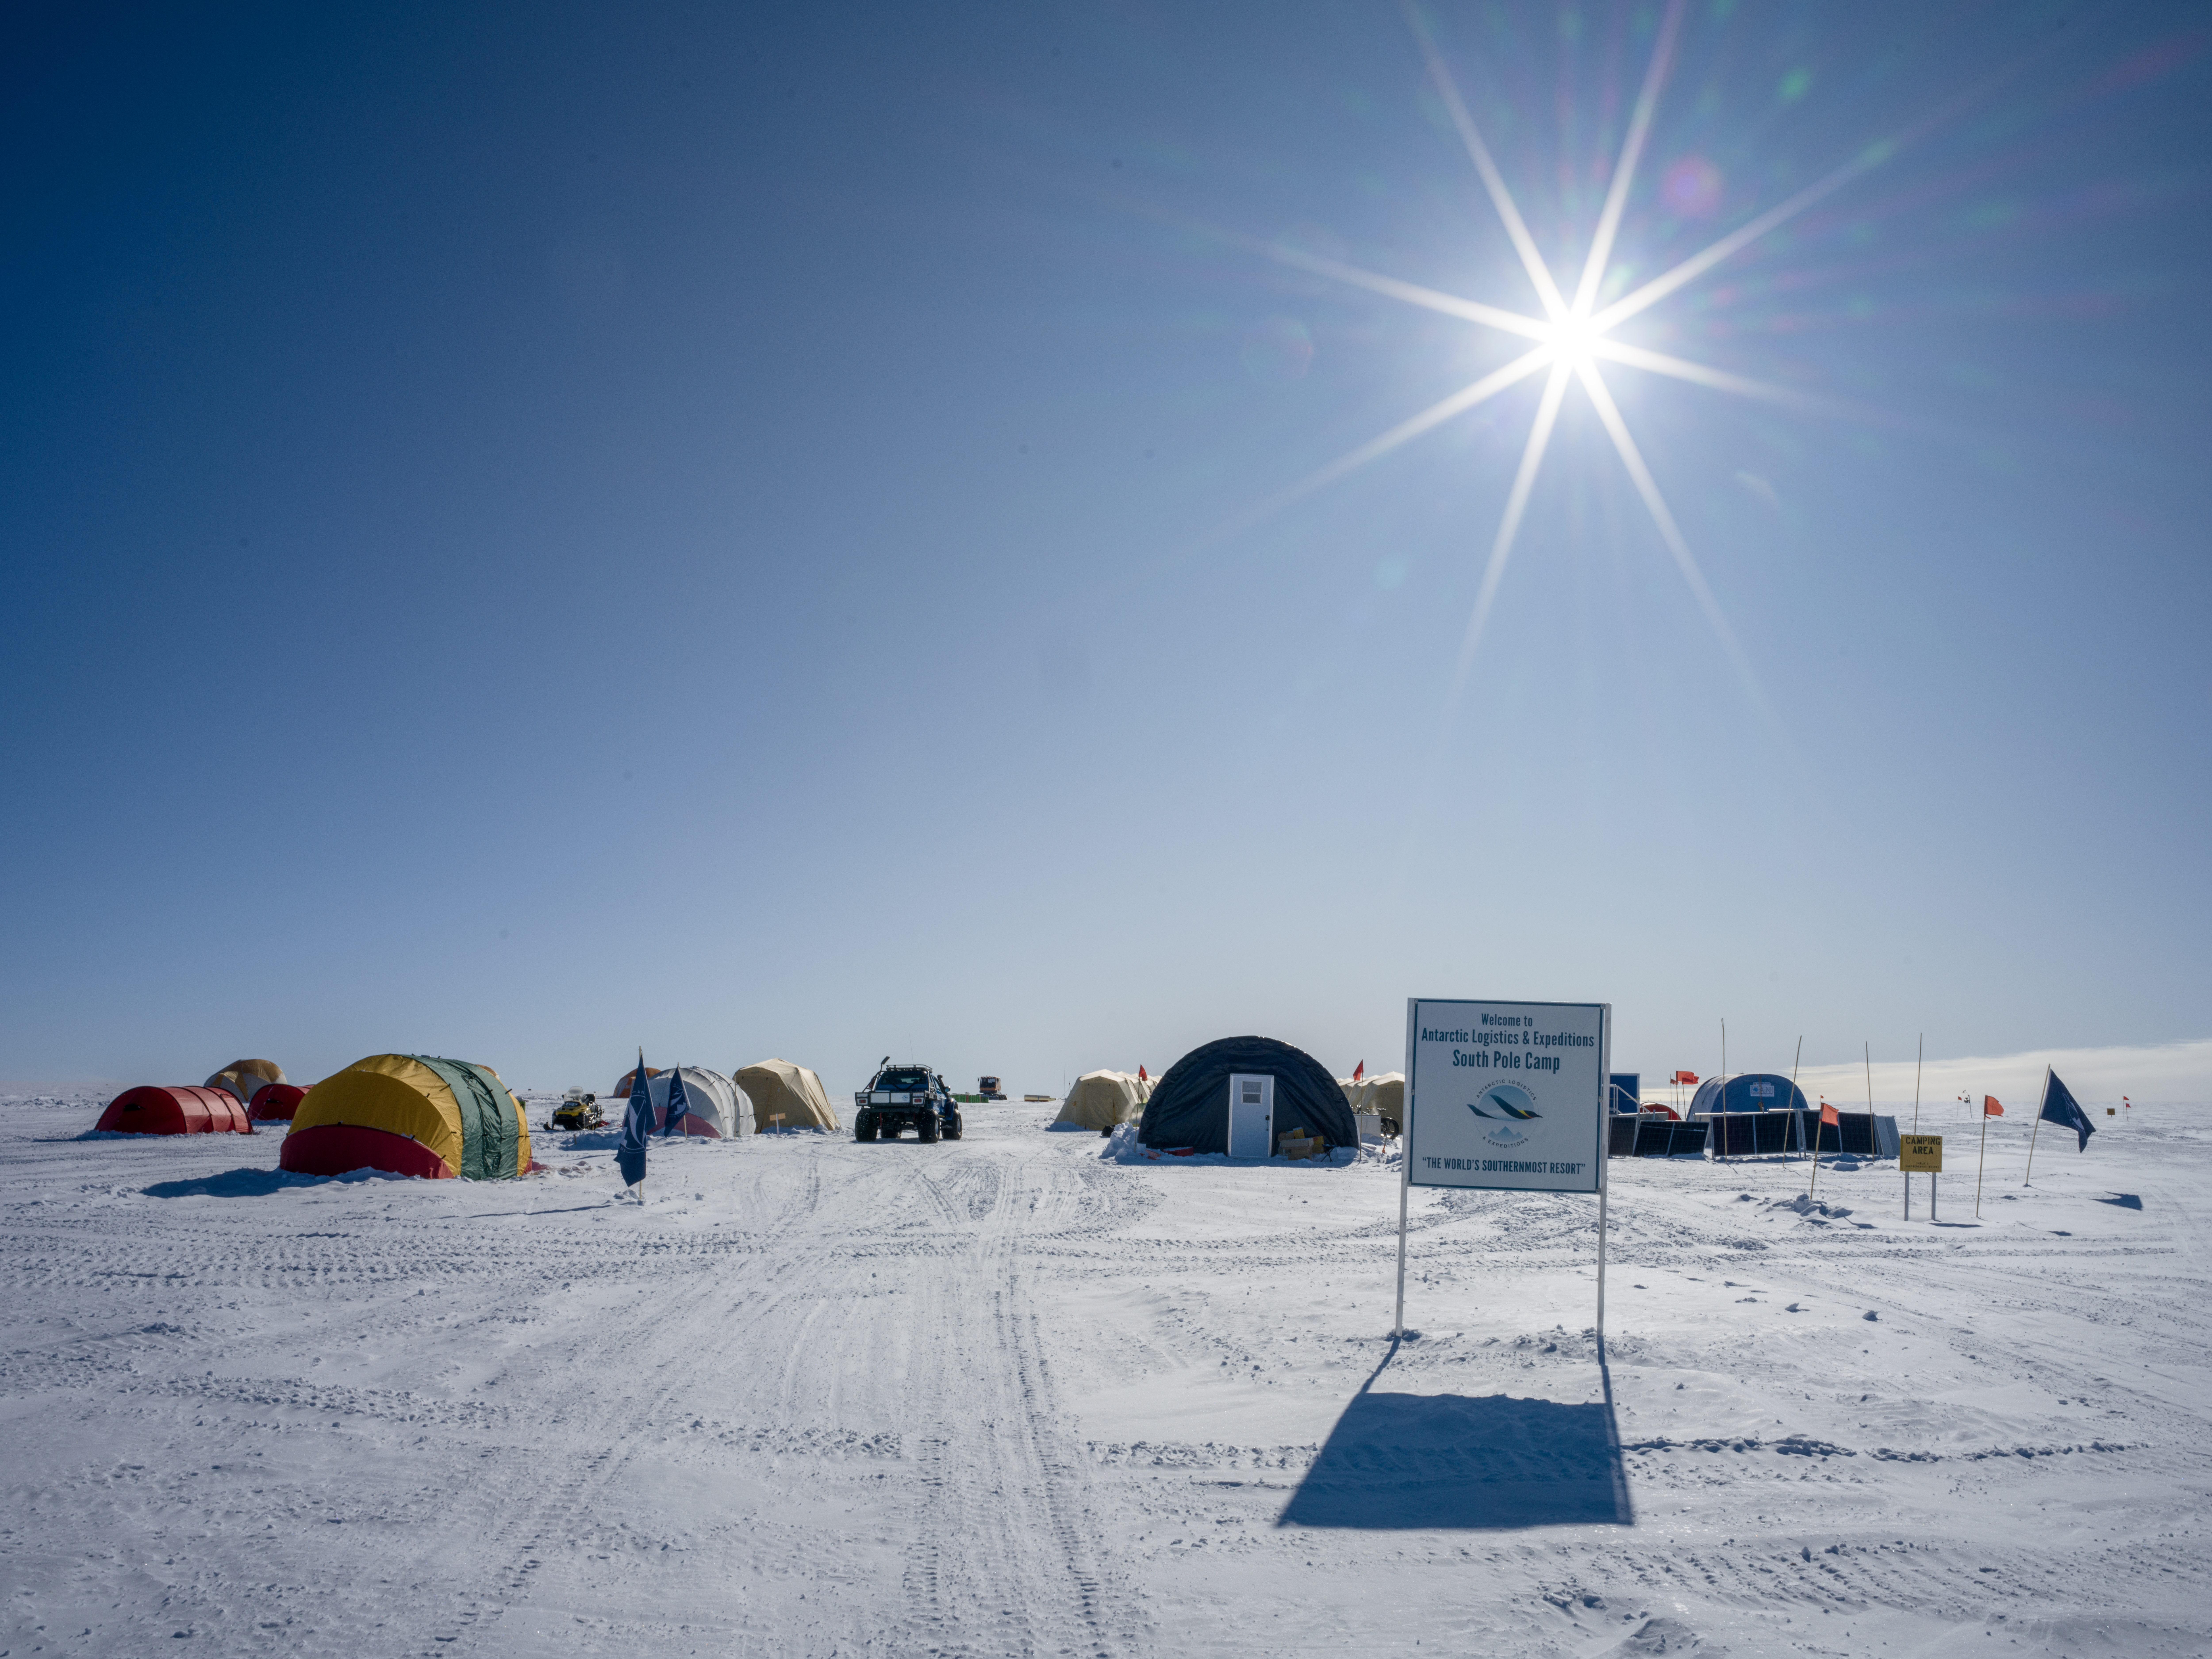 ALE's South Pole Camp